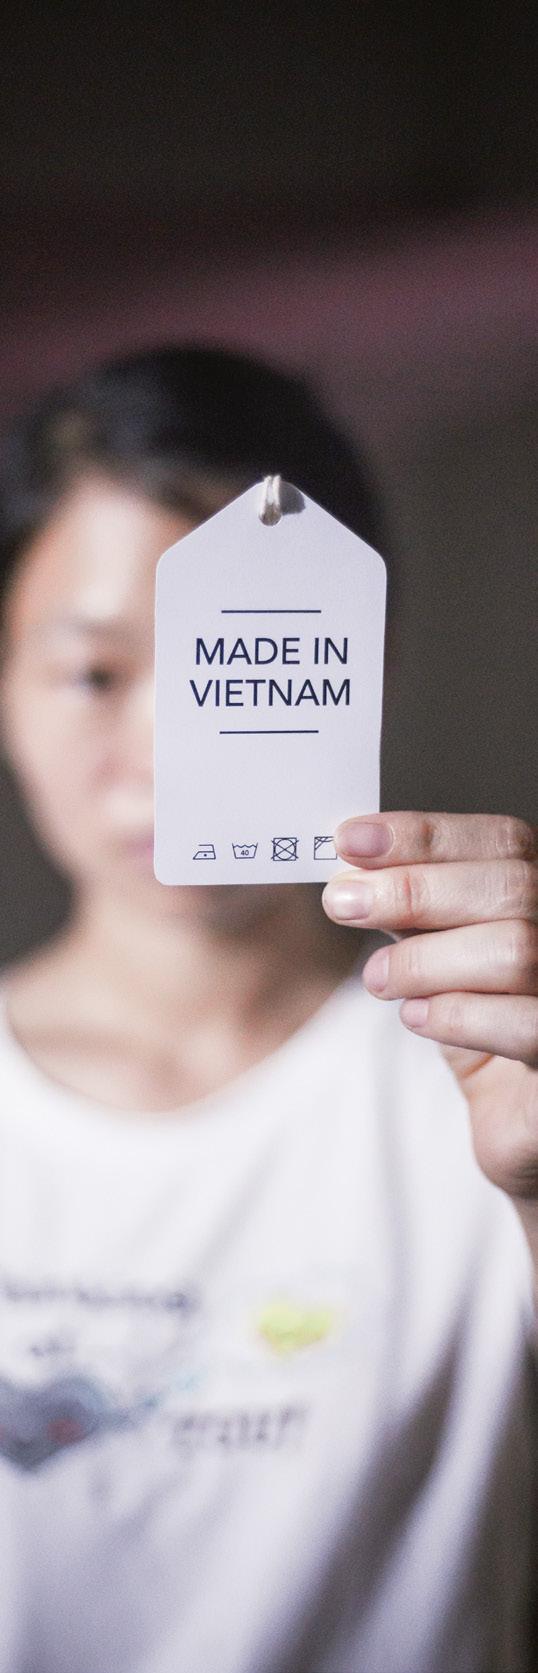 Chị Mai, công nhân may, cầm trên tay tag quần áo Made in Vietnam.